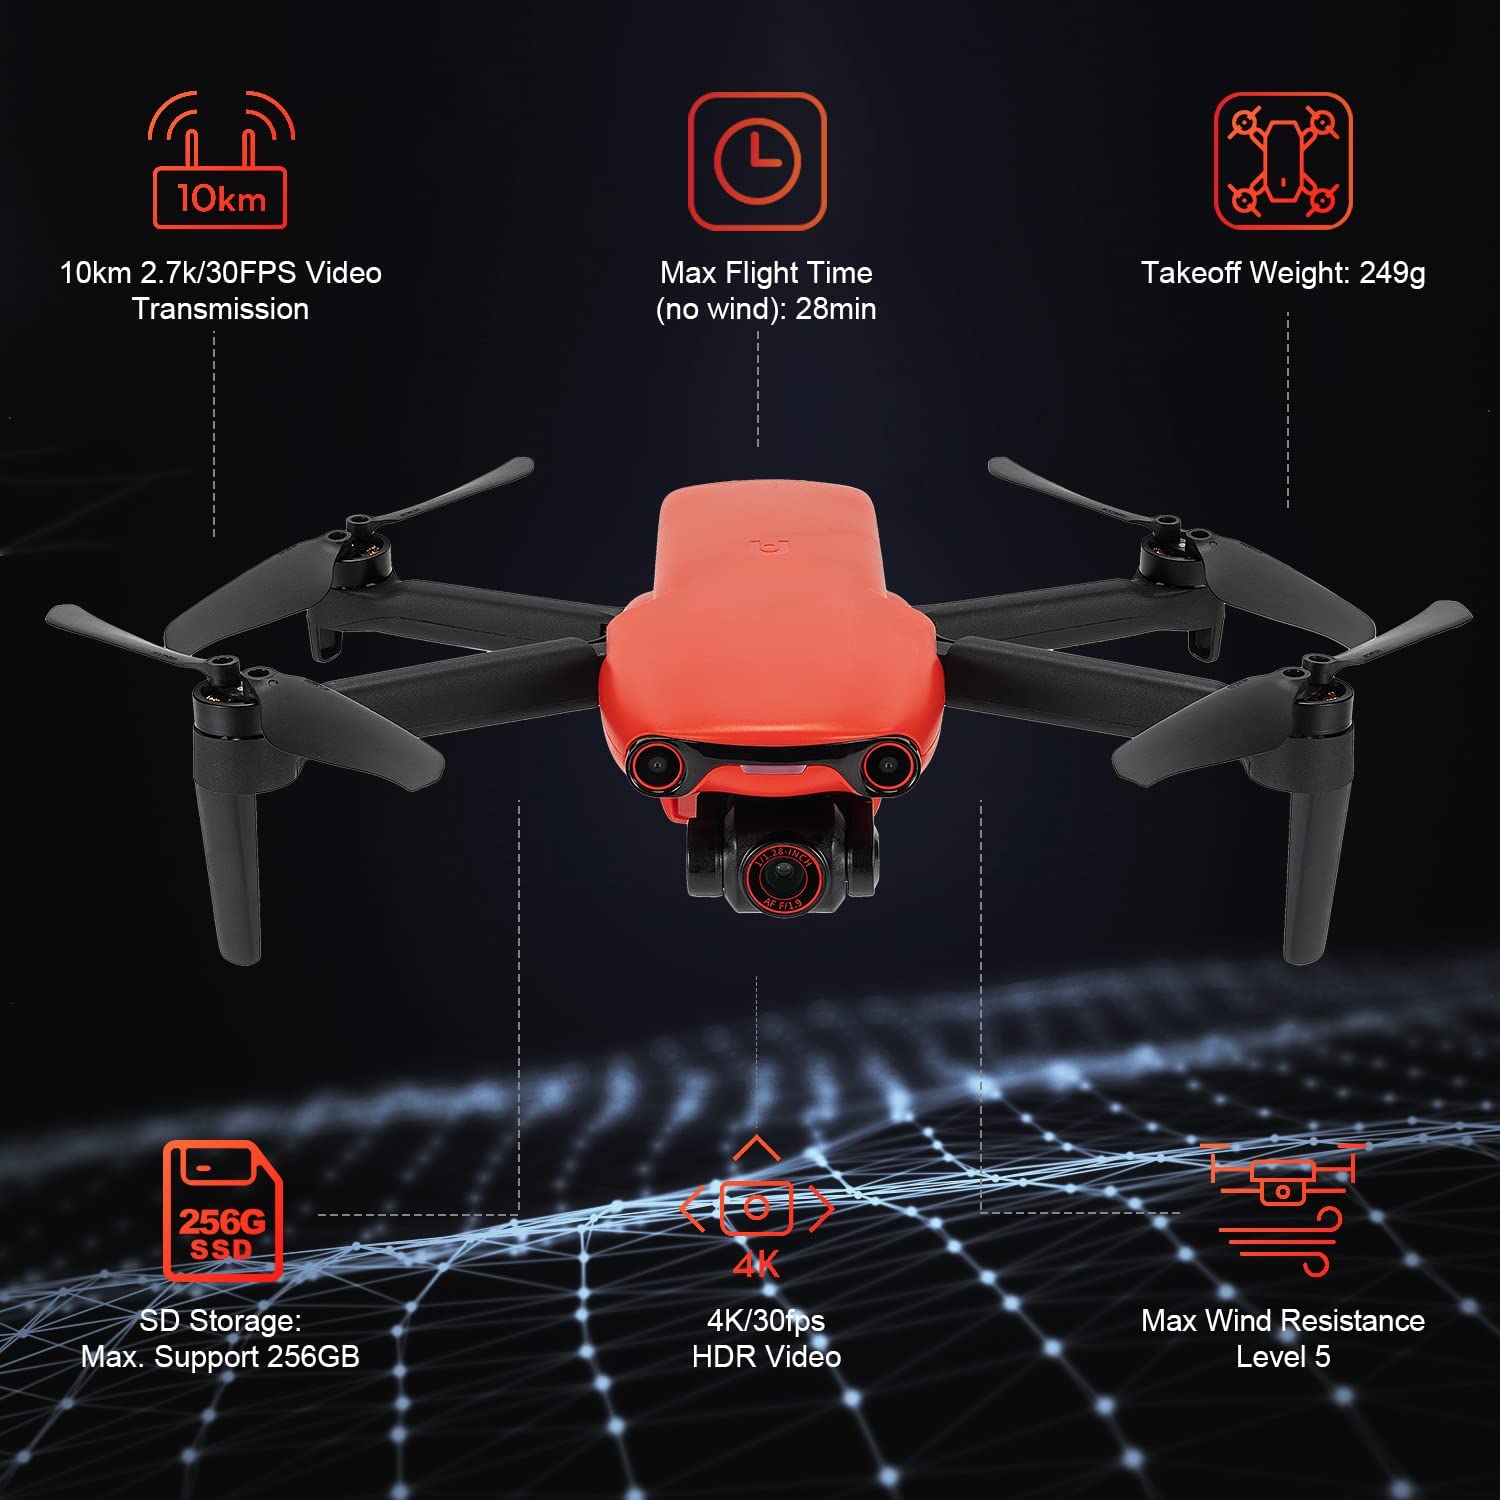 Autel Evo Nano Plus 249g drone